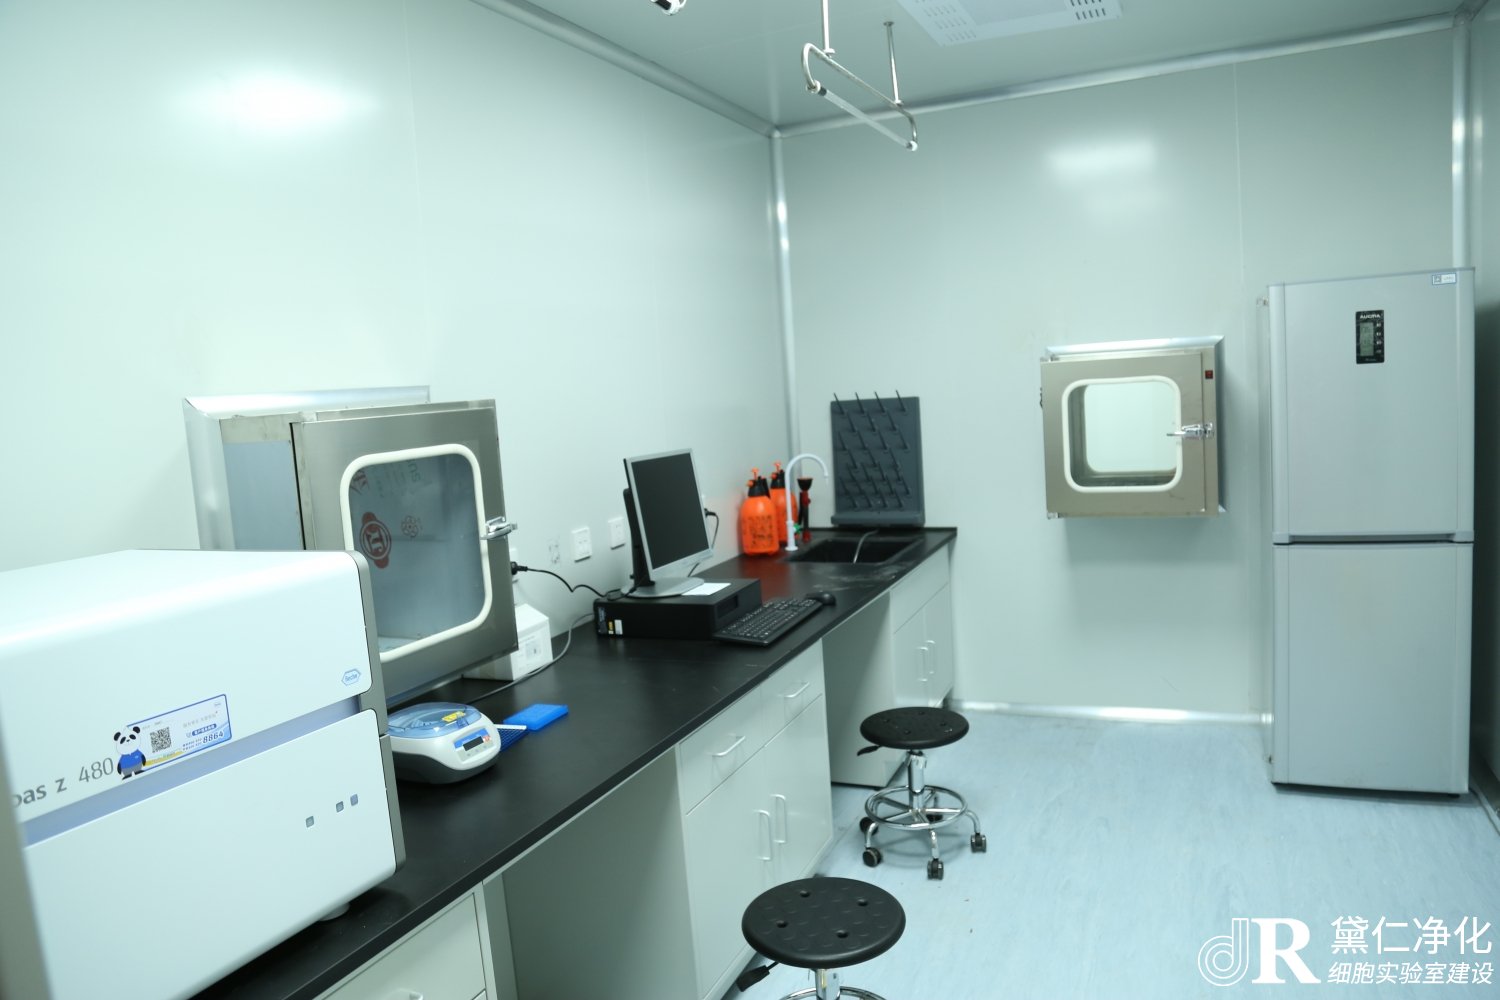 细胞实验室仪器、设施、器具的使用